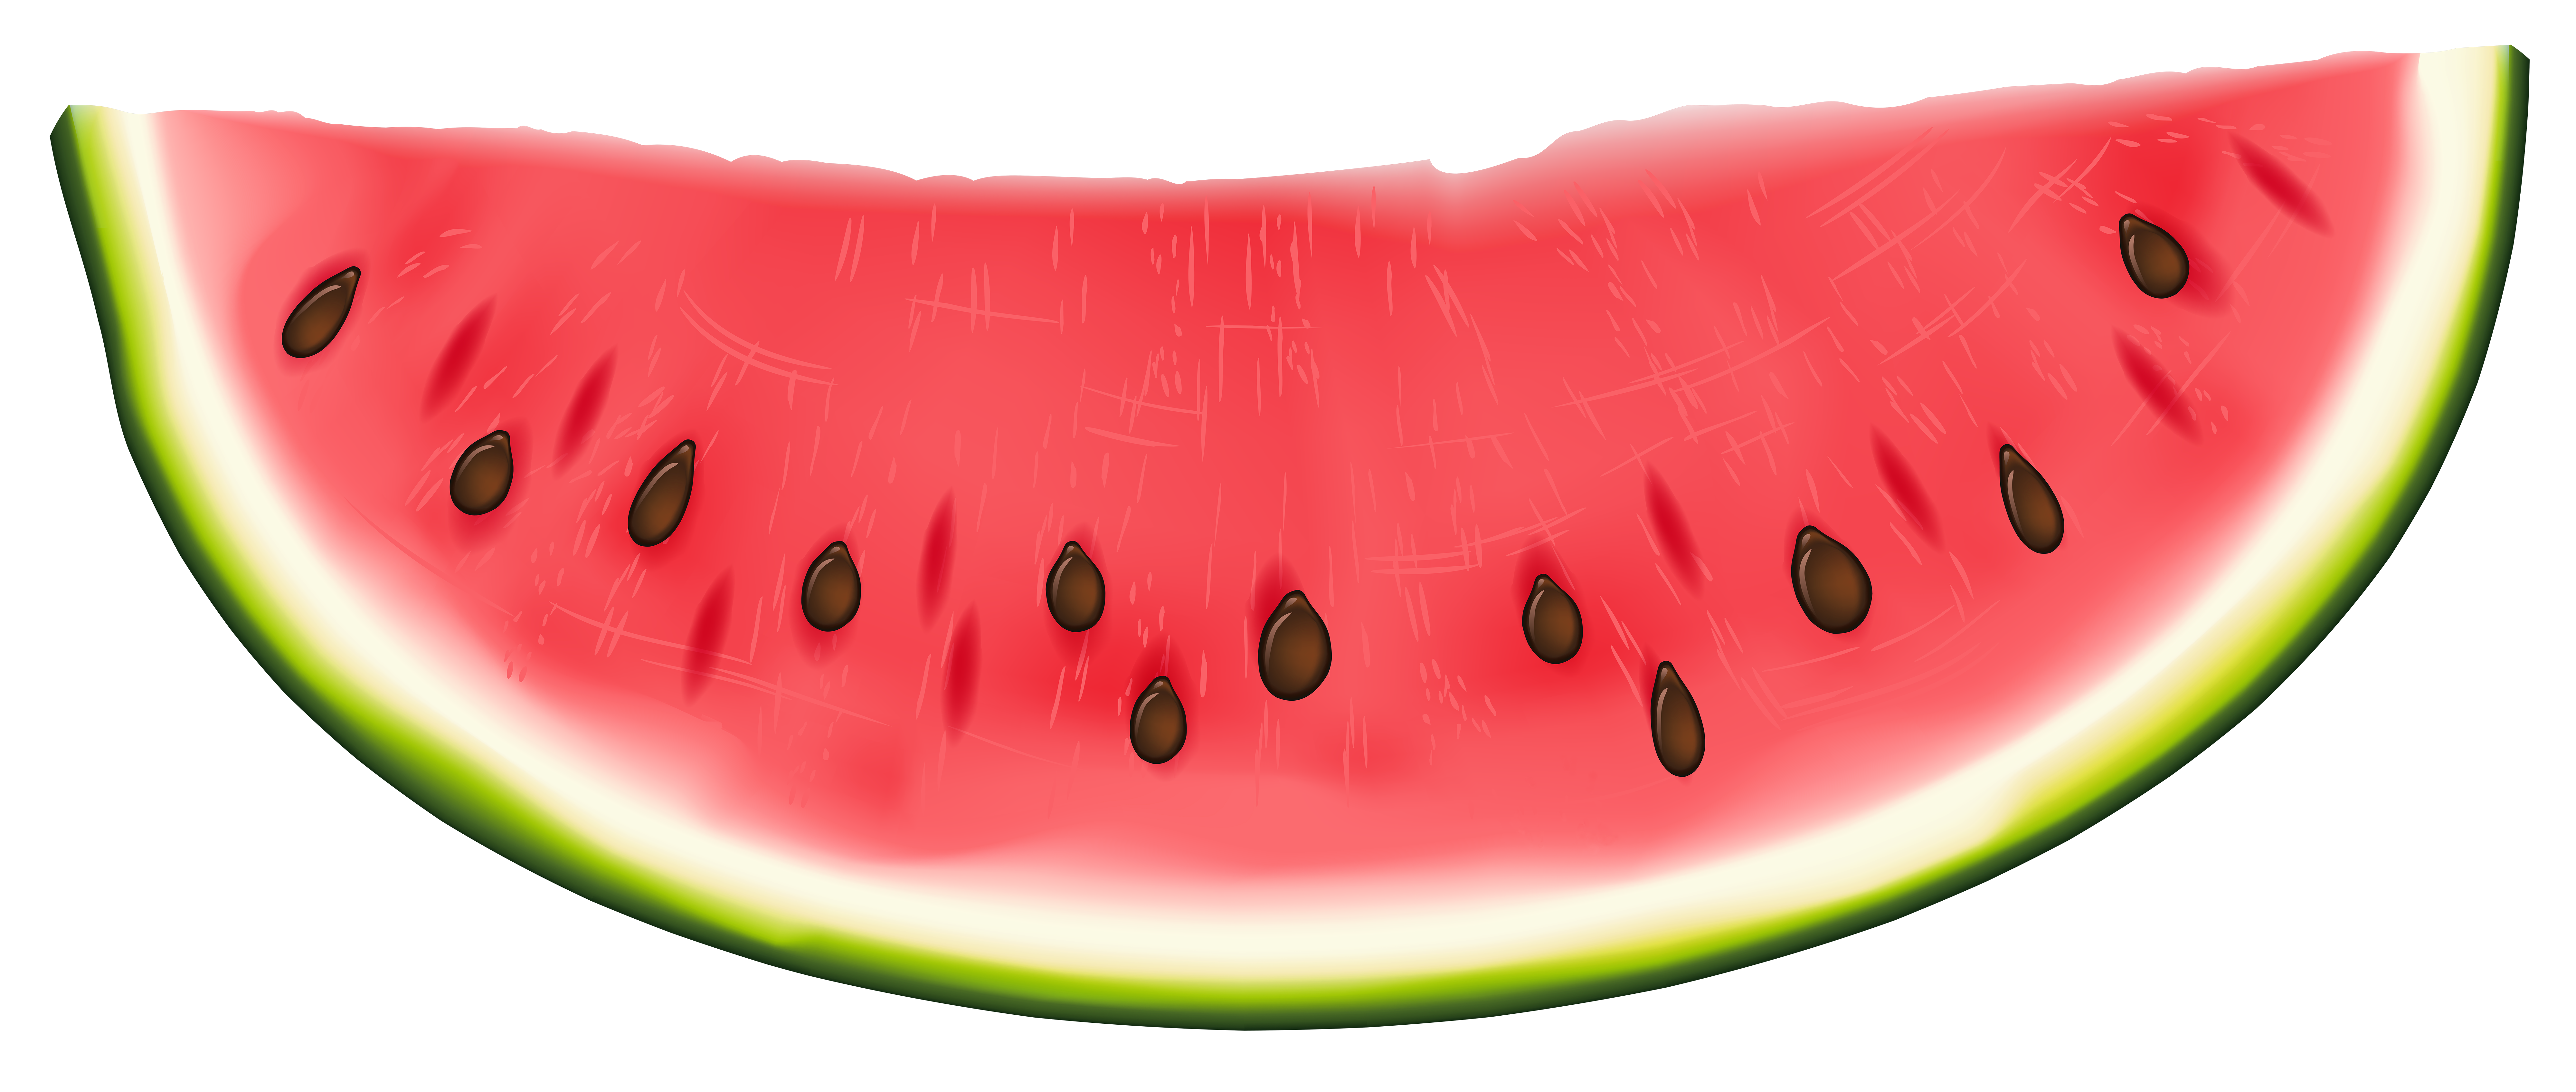 Watermelon PNG Clip Art Image 